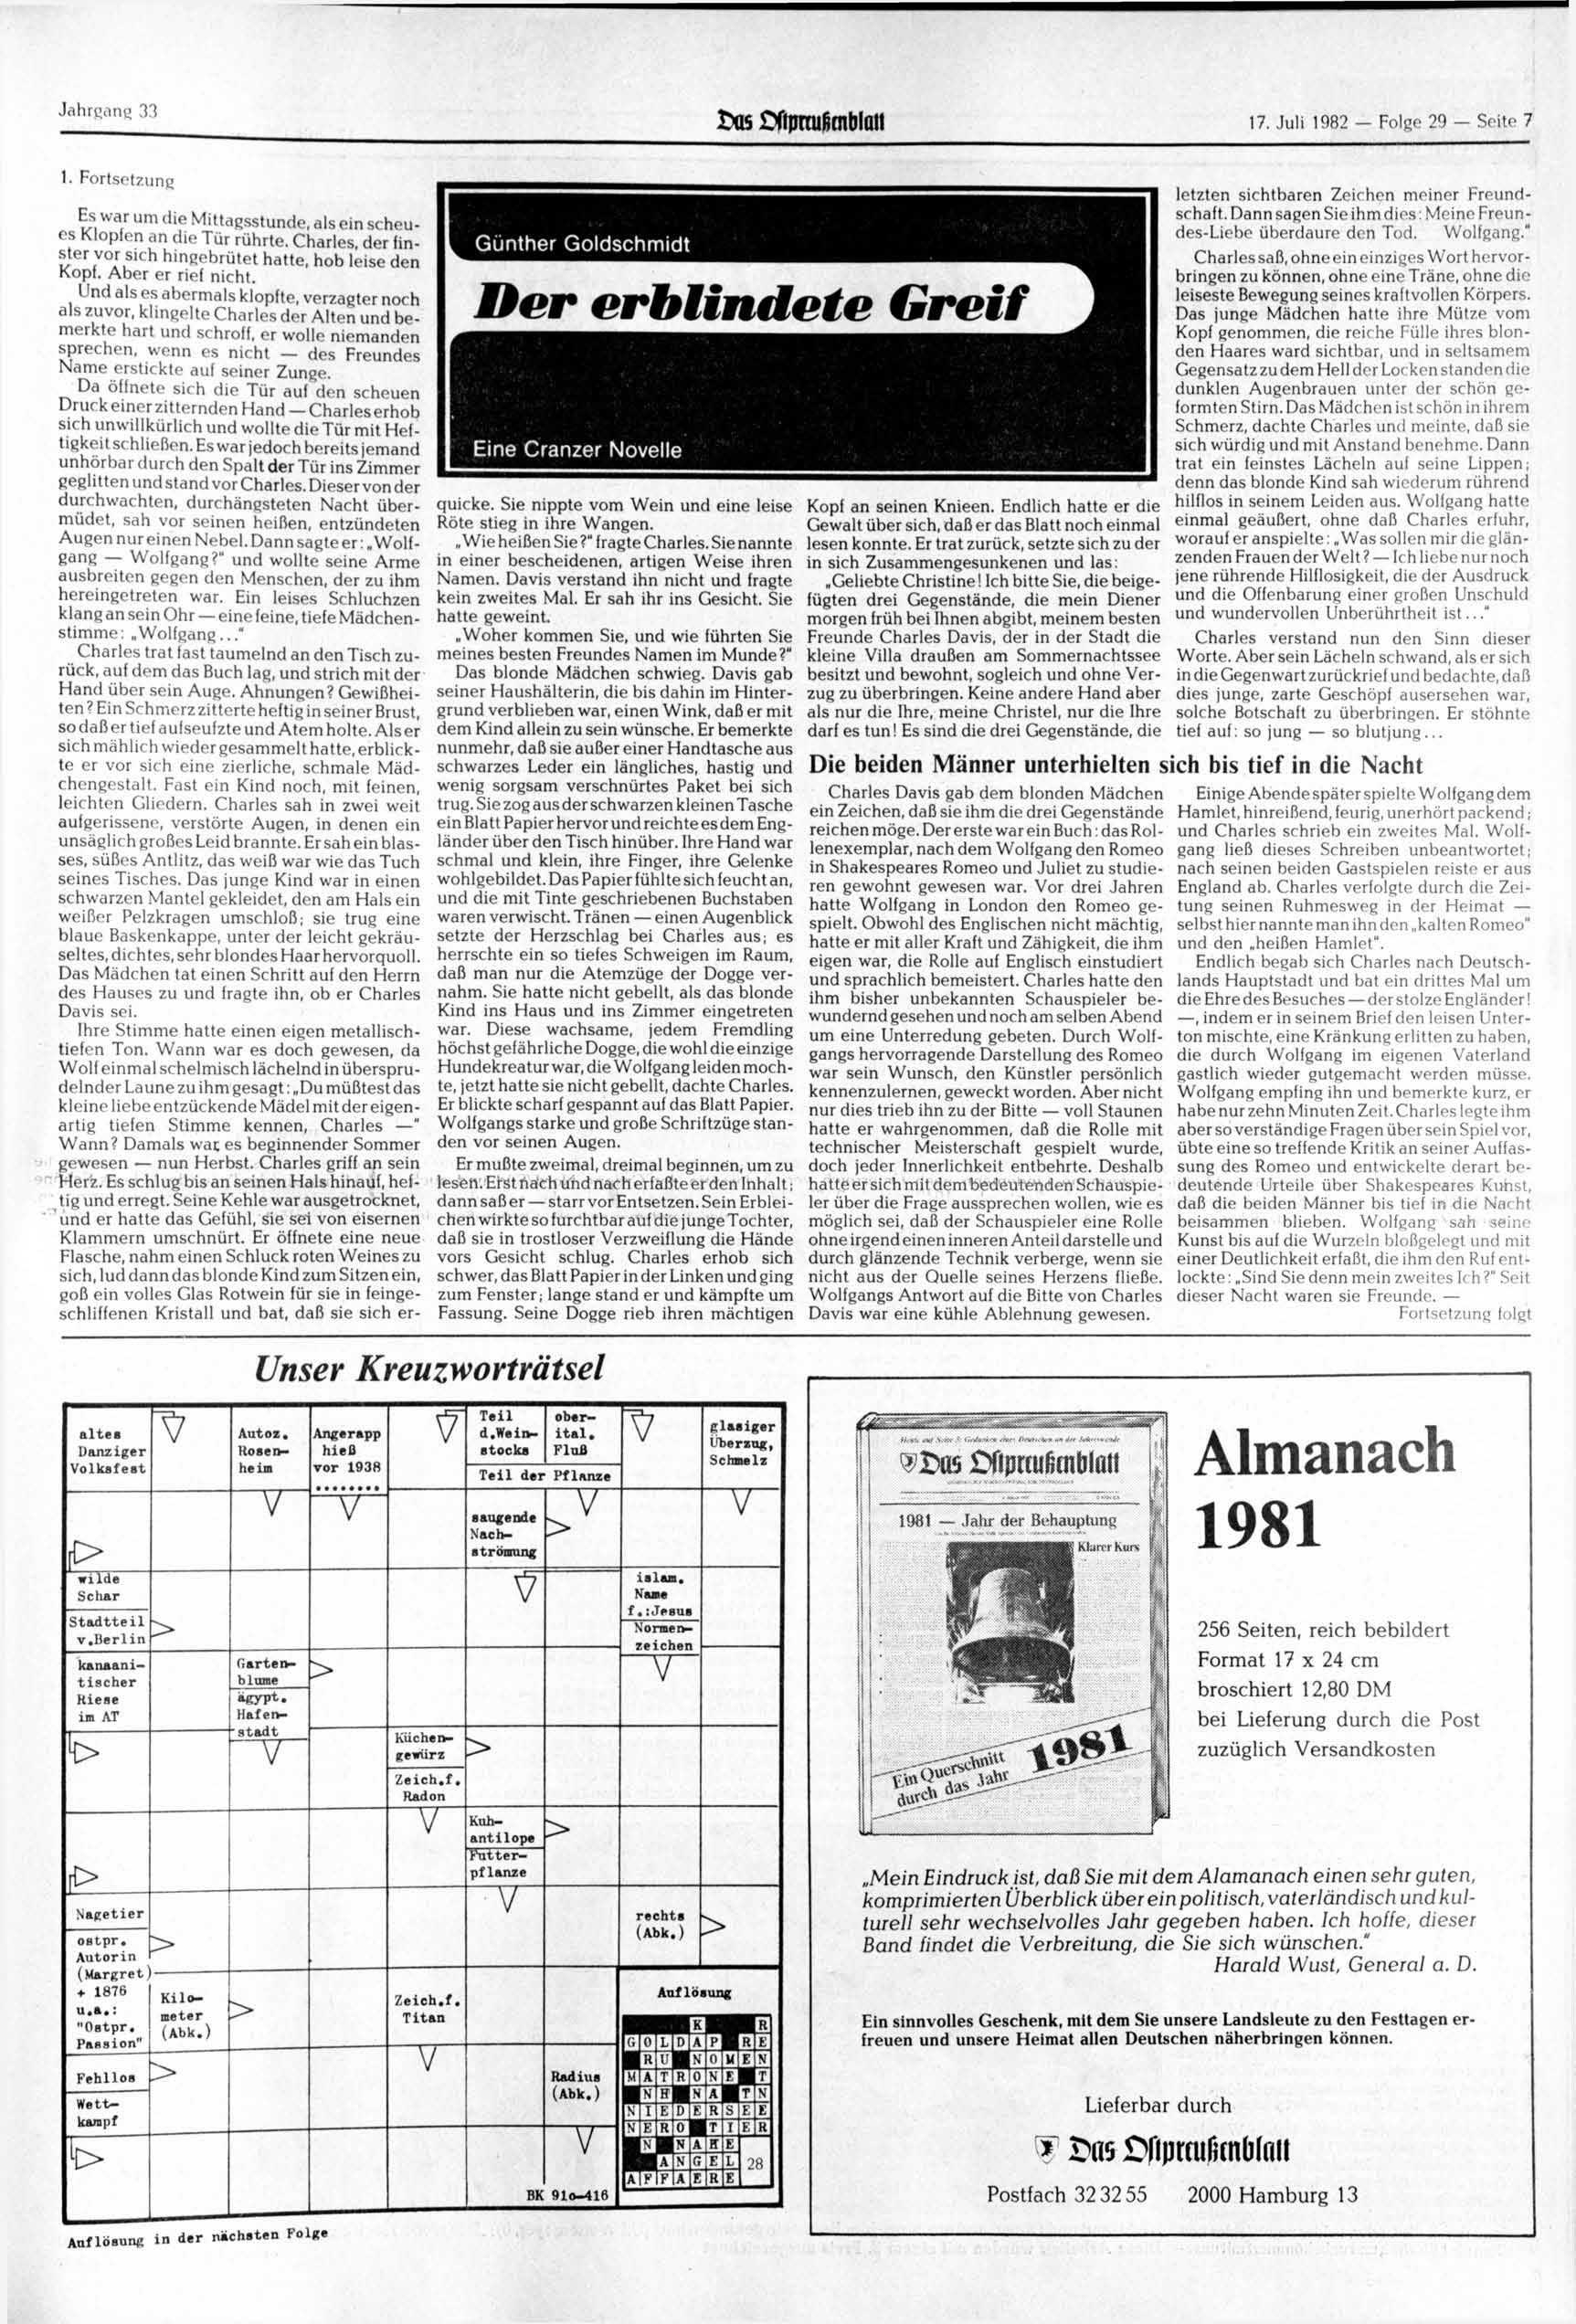 Jahrgang 33 os Hipmißtnblail 17. 1982 Folge 29 Seite 7 1. Fortsetzung Es war um die Mittagsstunde, als ein scheues Klopfen an die Tür rührte.